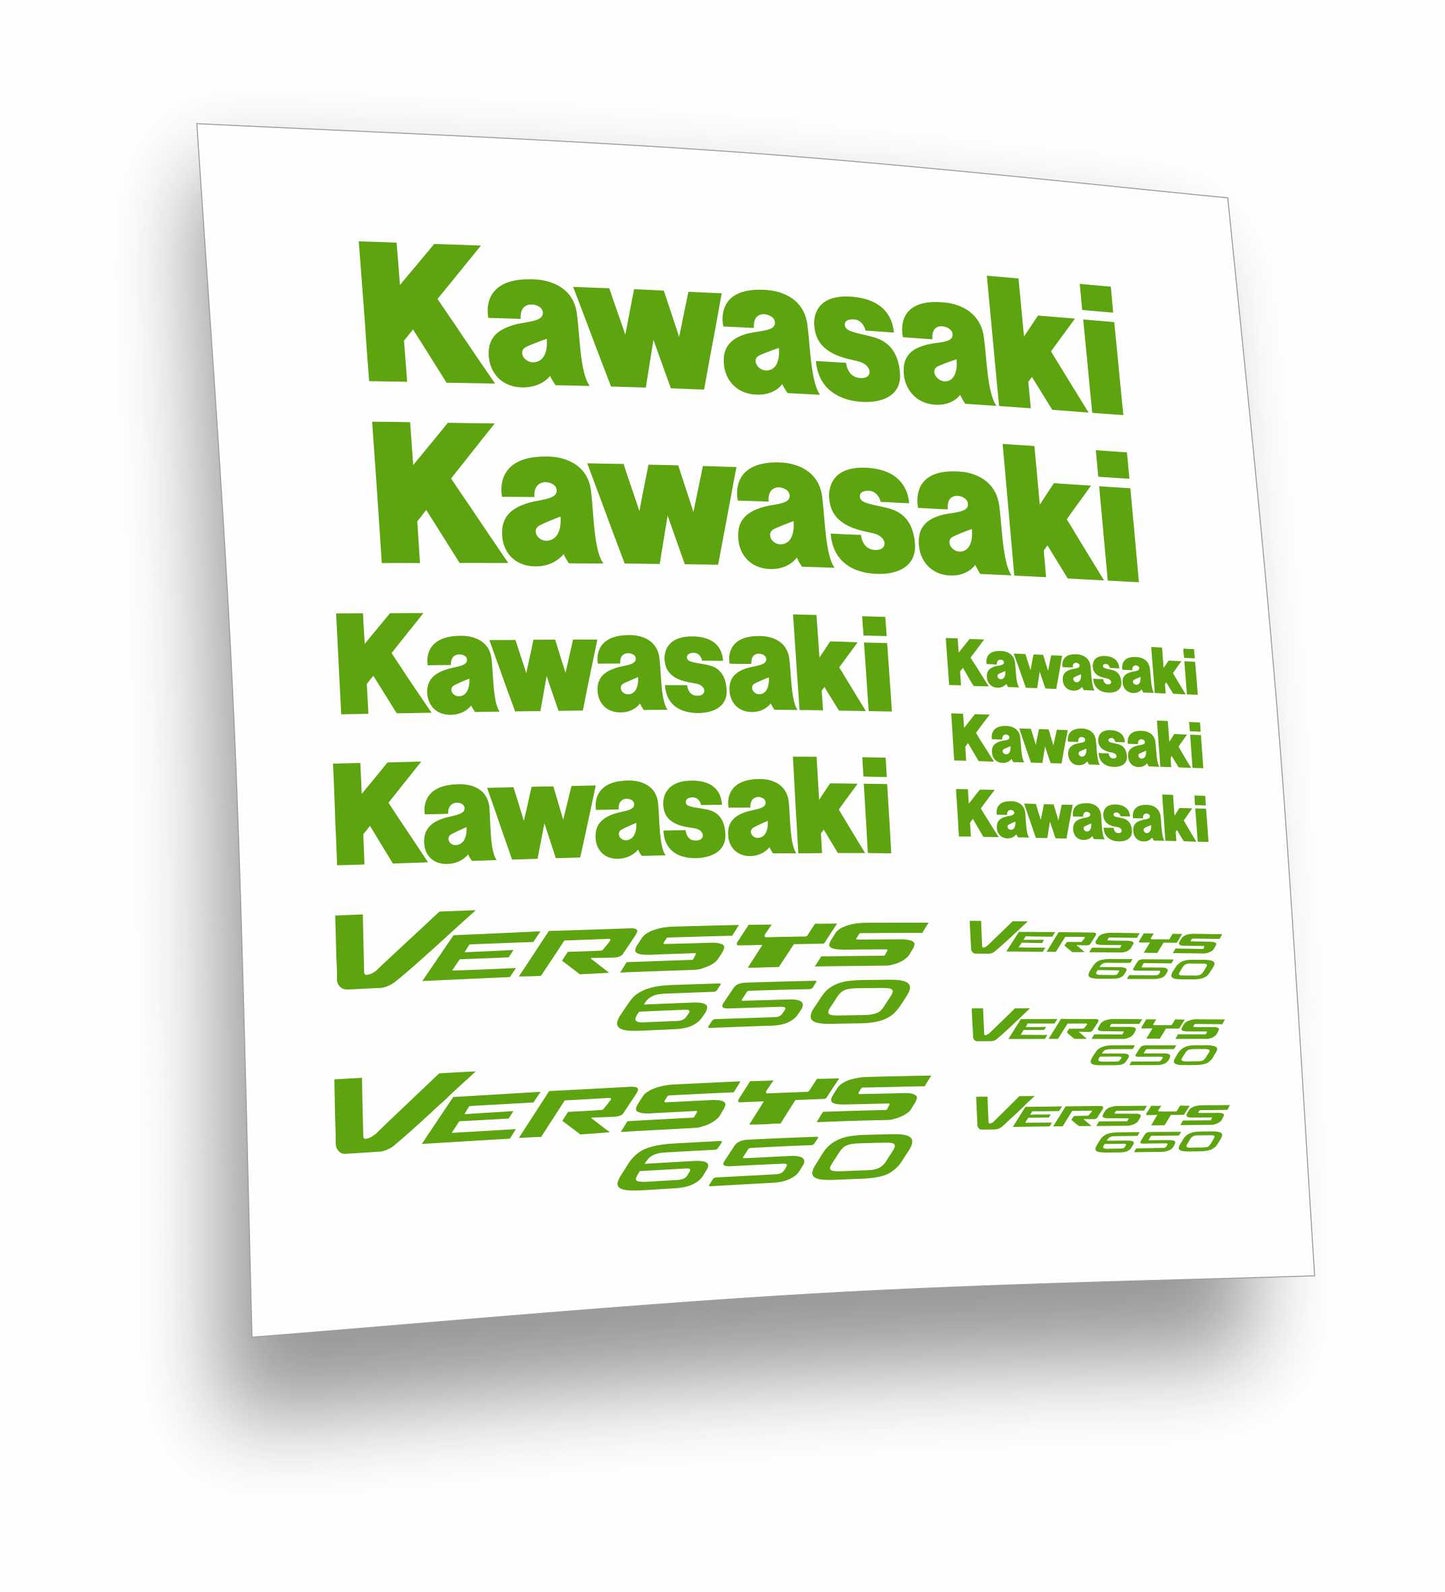 adesivi stickers Kawasaki Versis 650